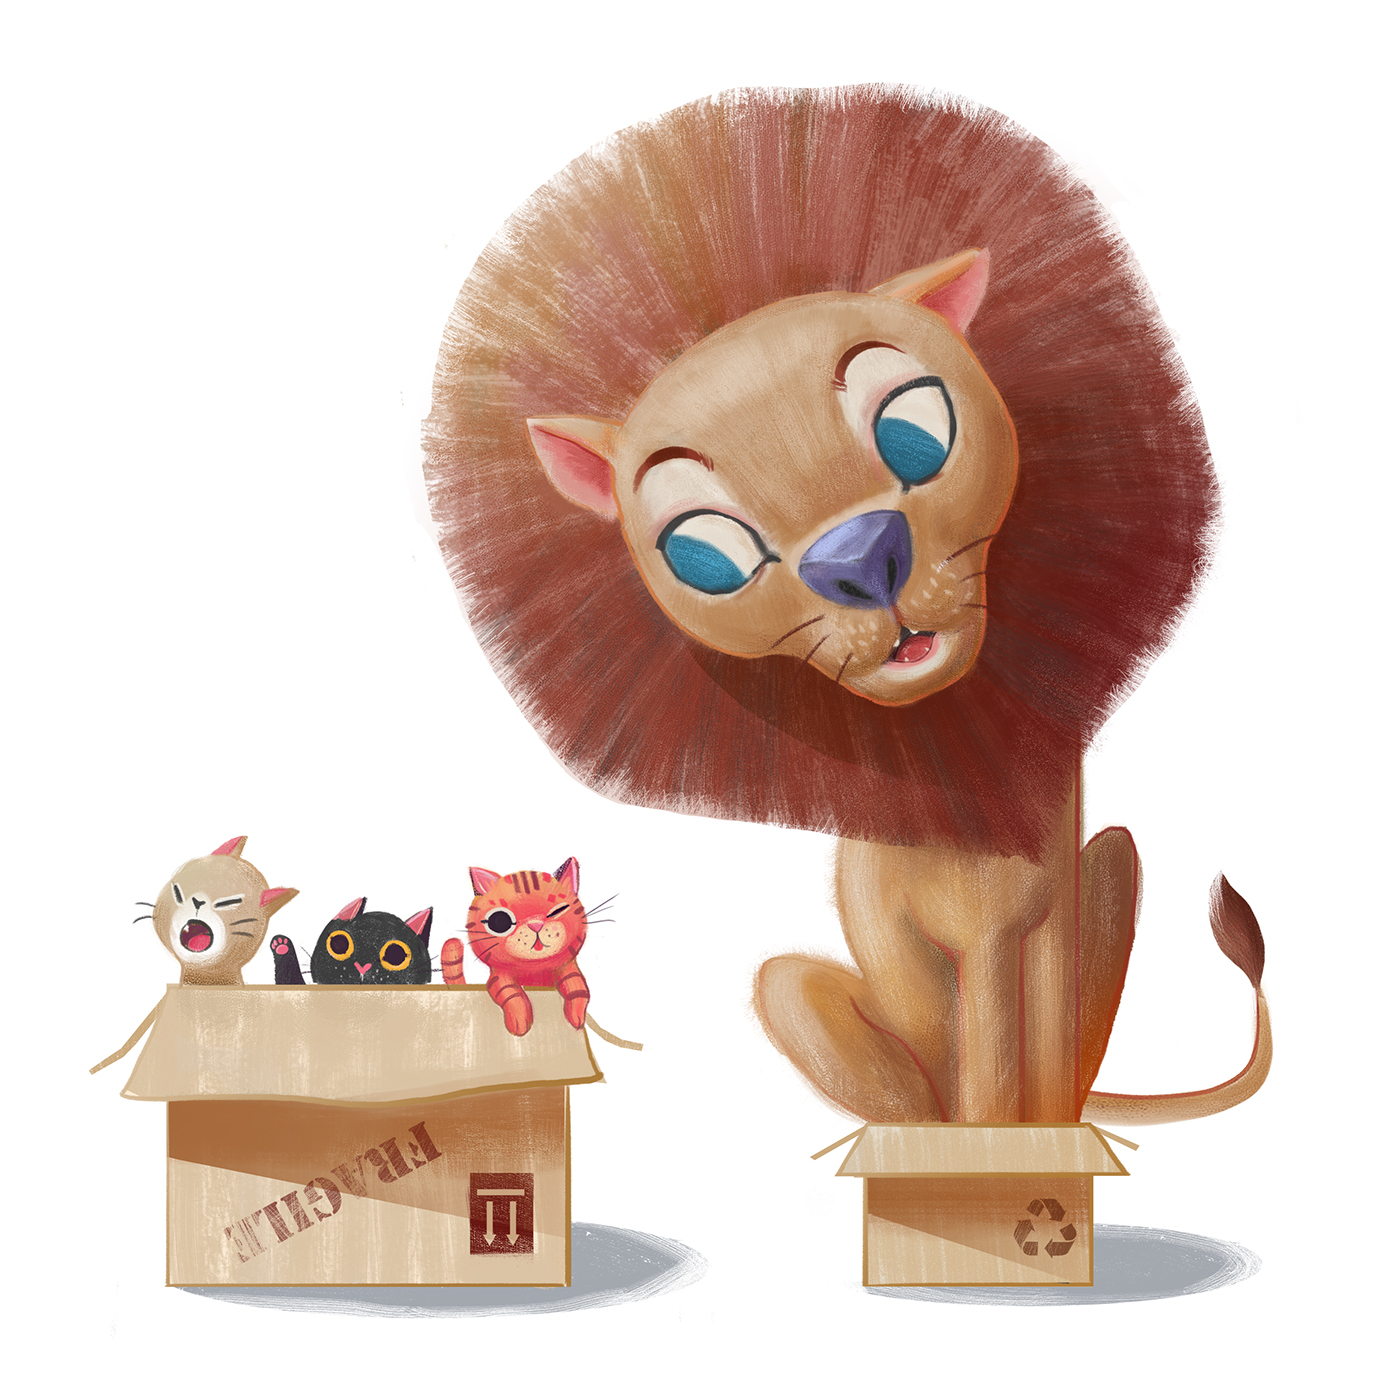 kitten kittens lion kidlitart ILLUSTRATION  children illustration